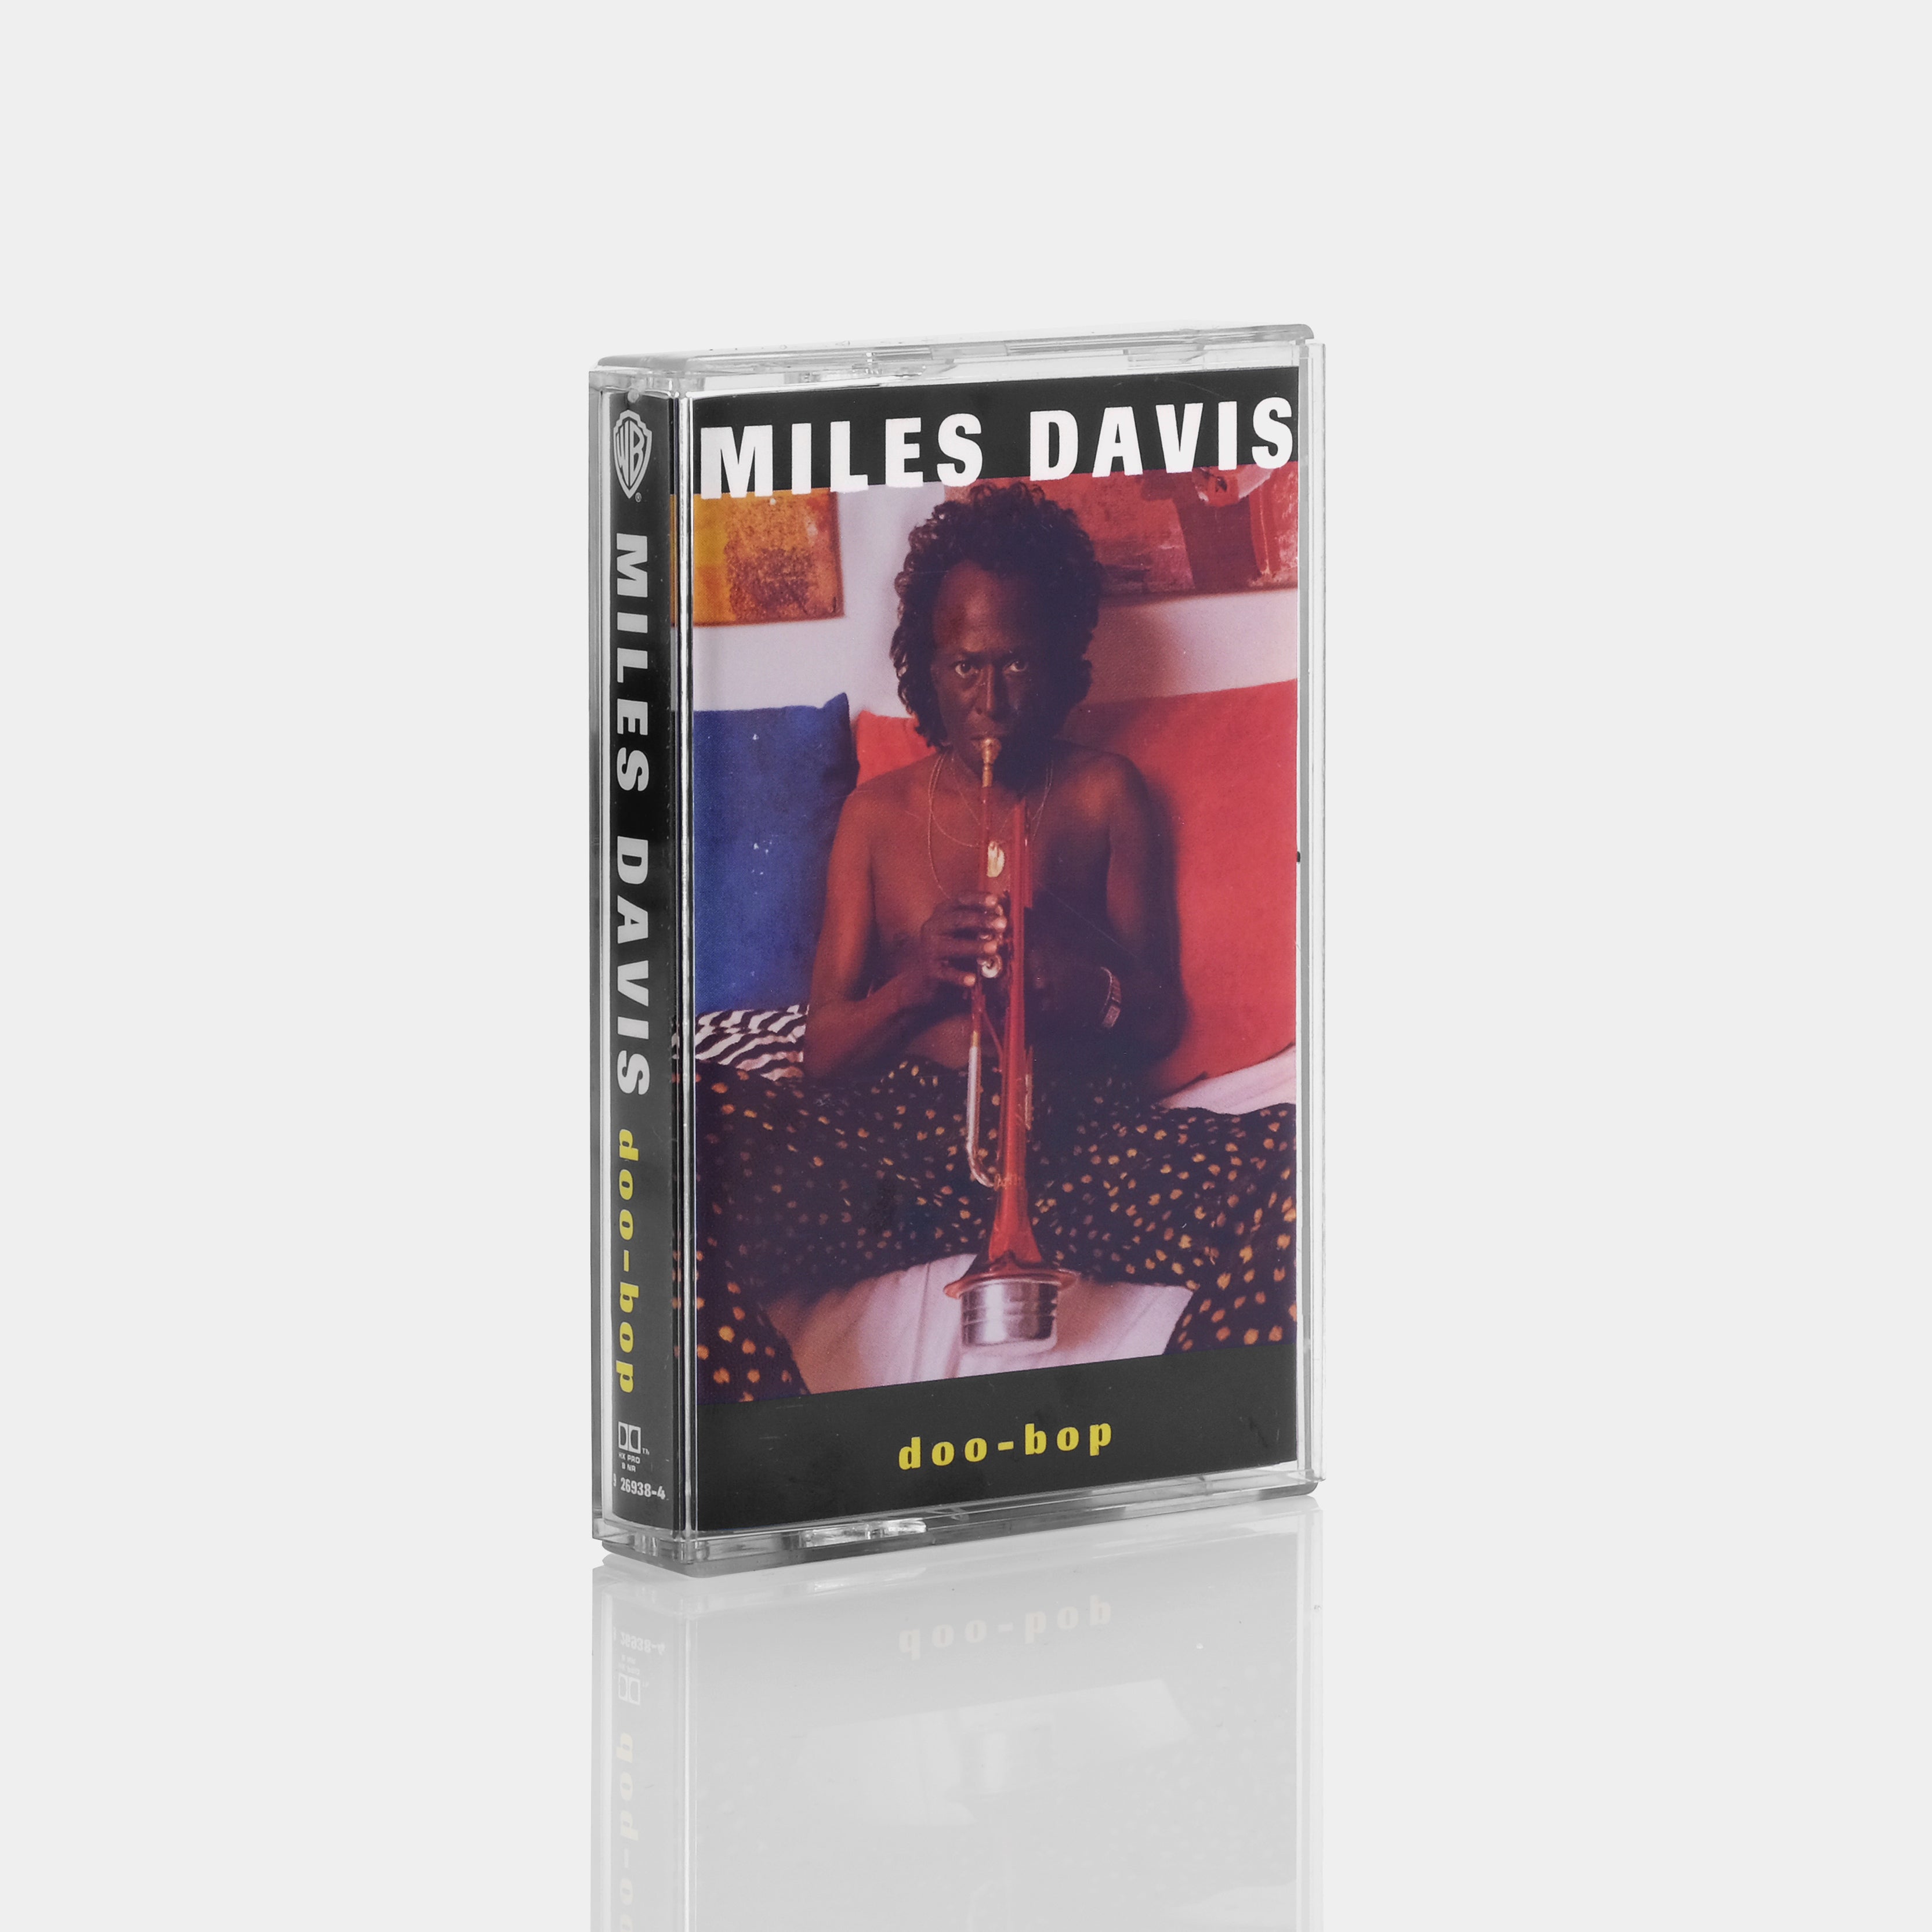 Miles Davis - Doo Bop Cassette Tape